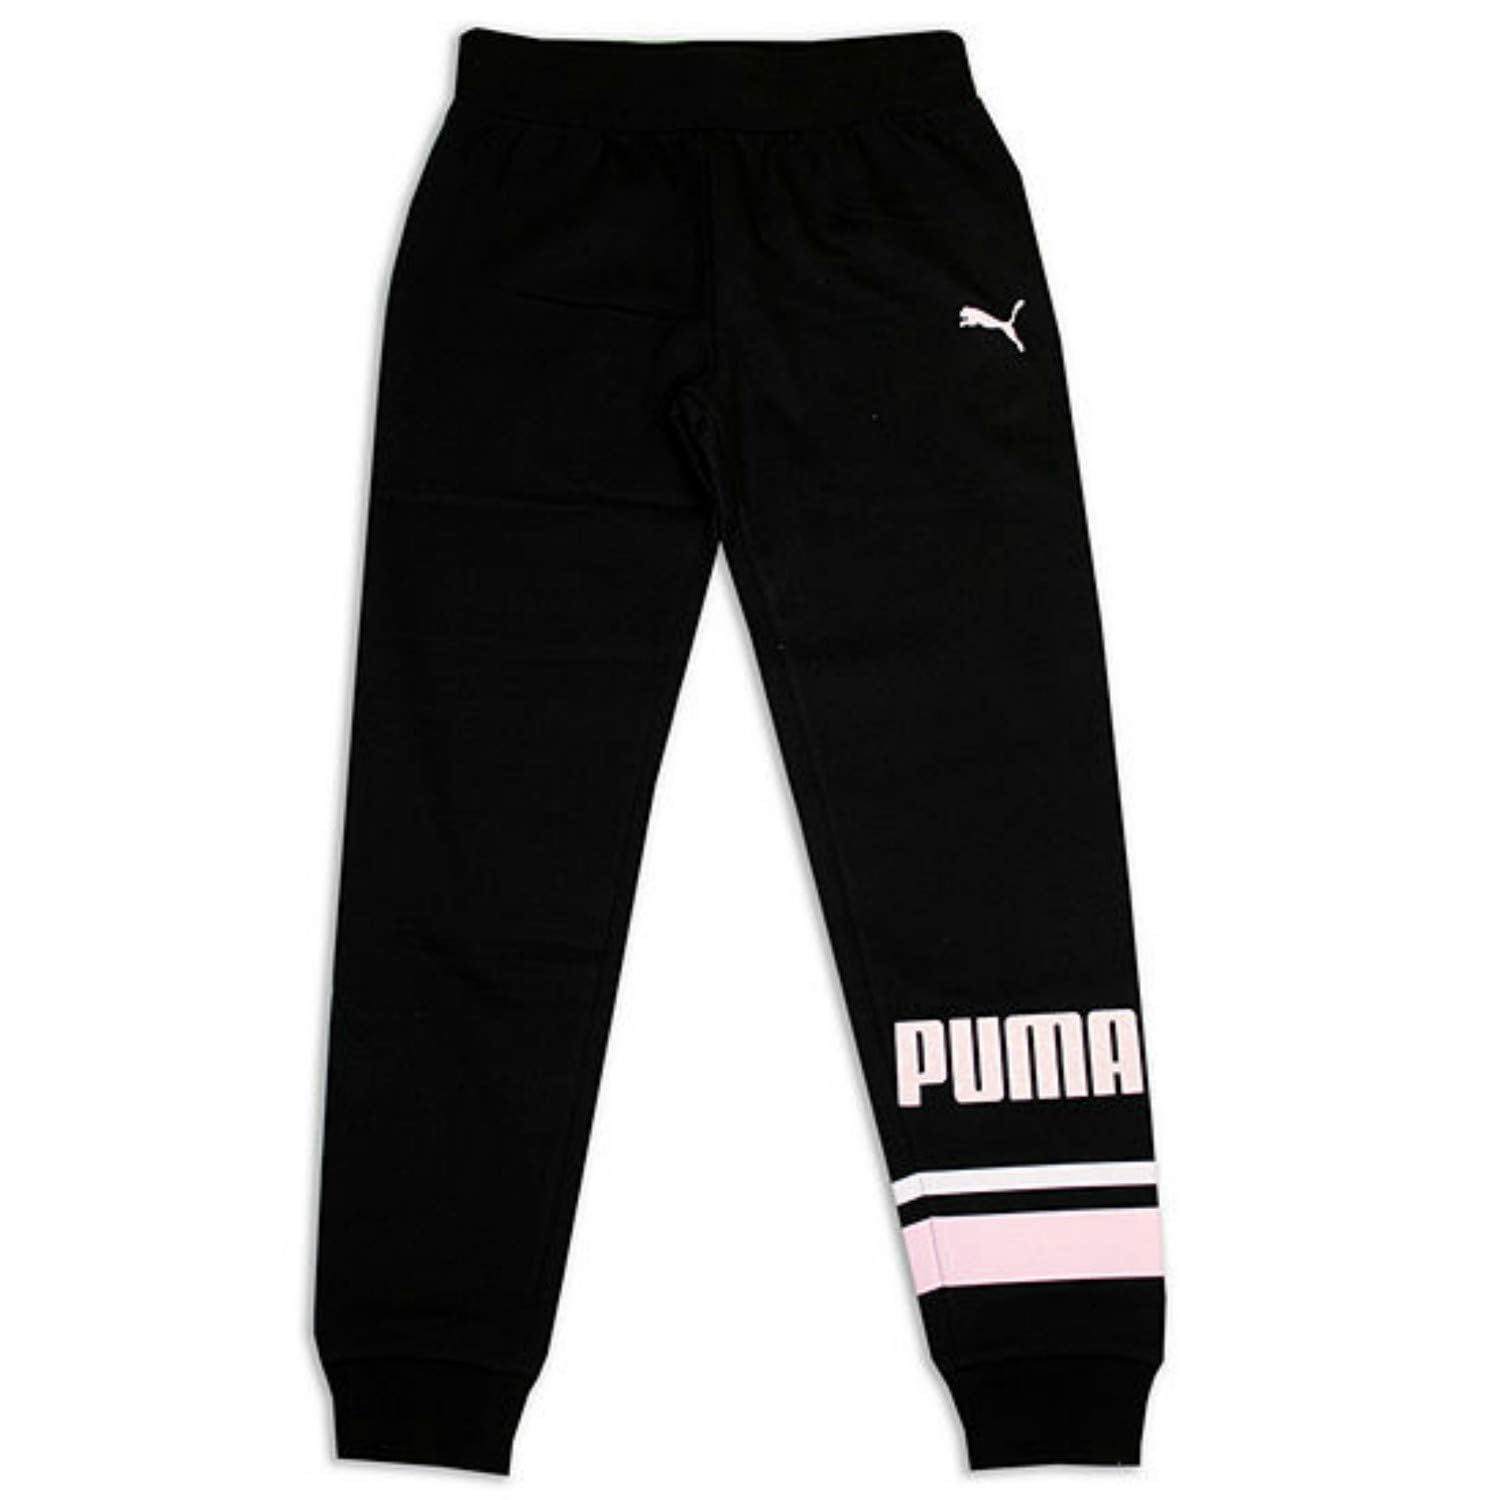 puma girls pants